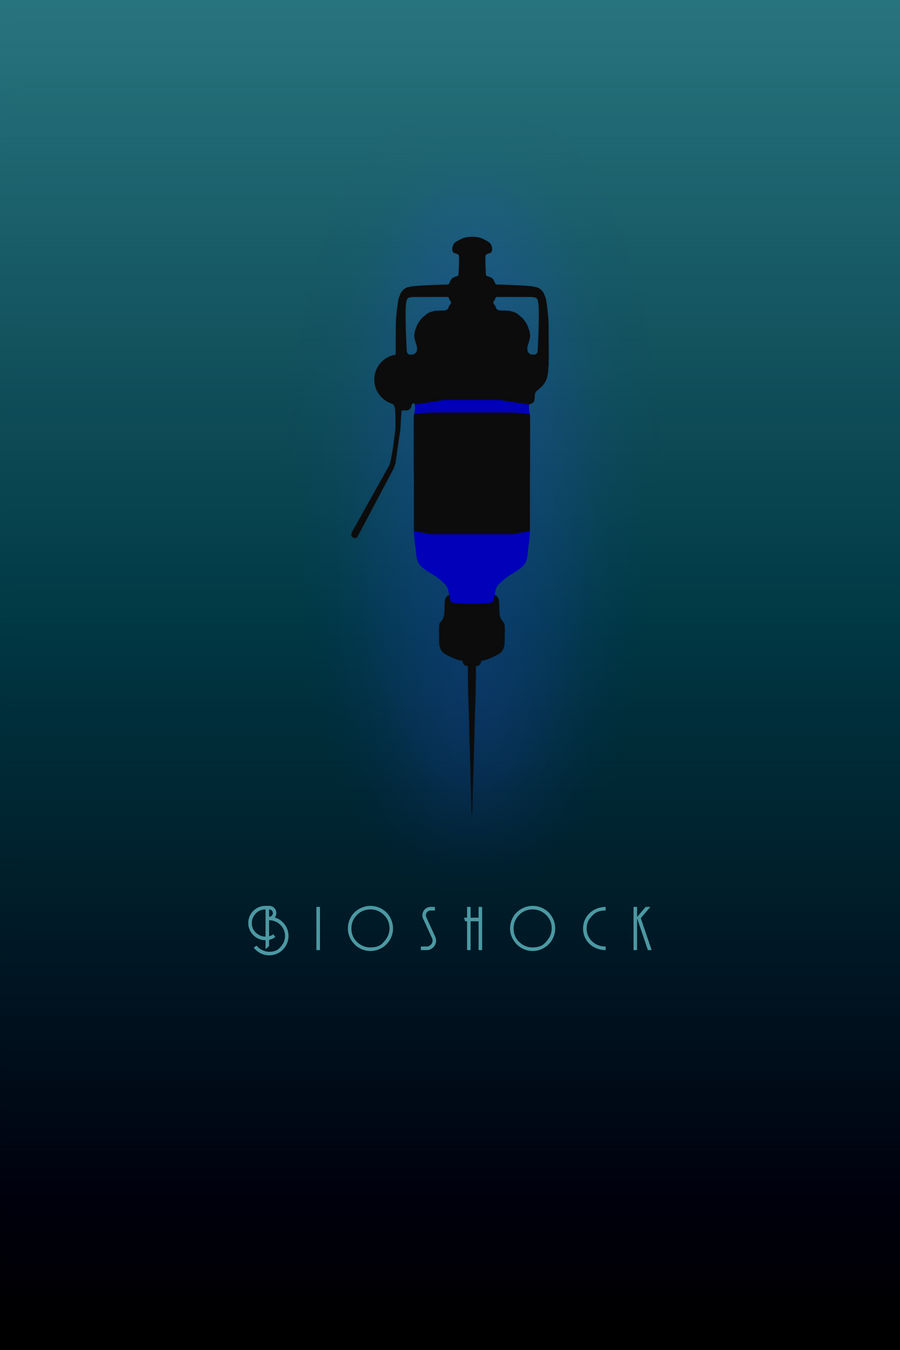 Bioshock: Poster (Font variant)